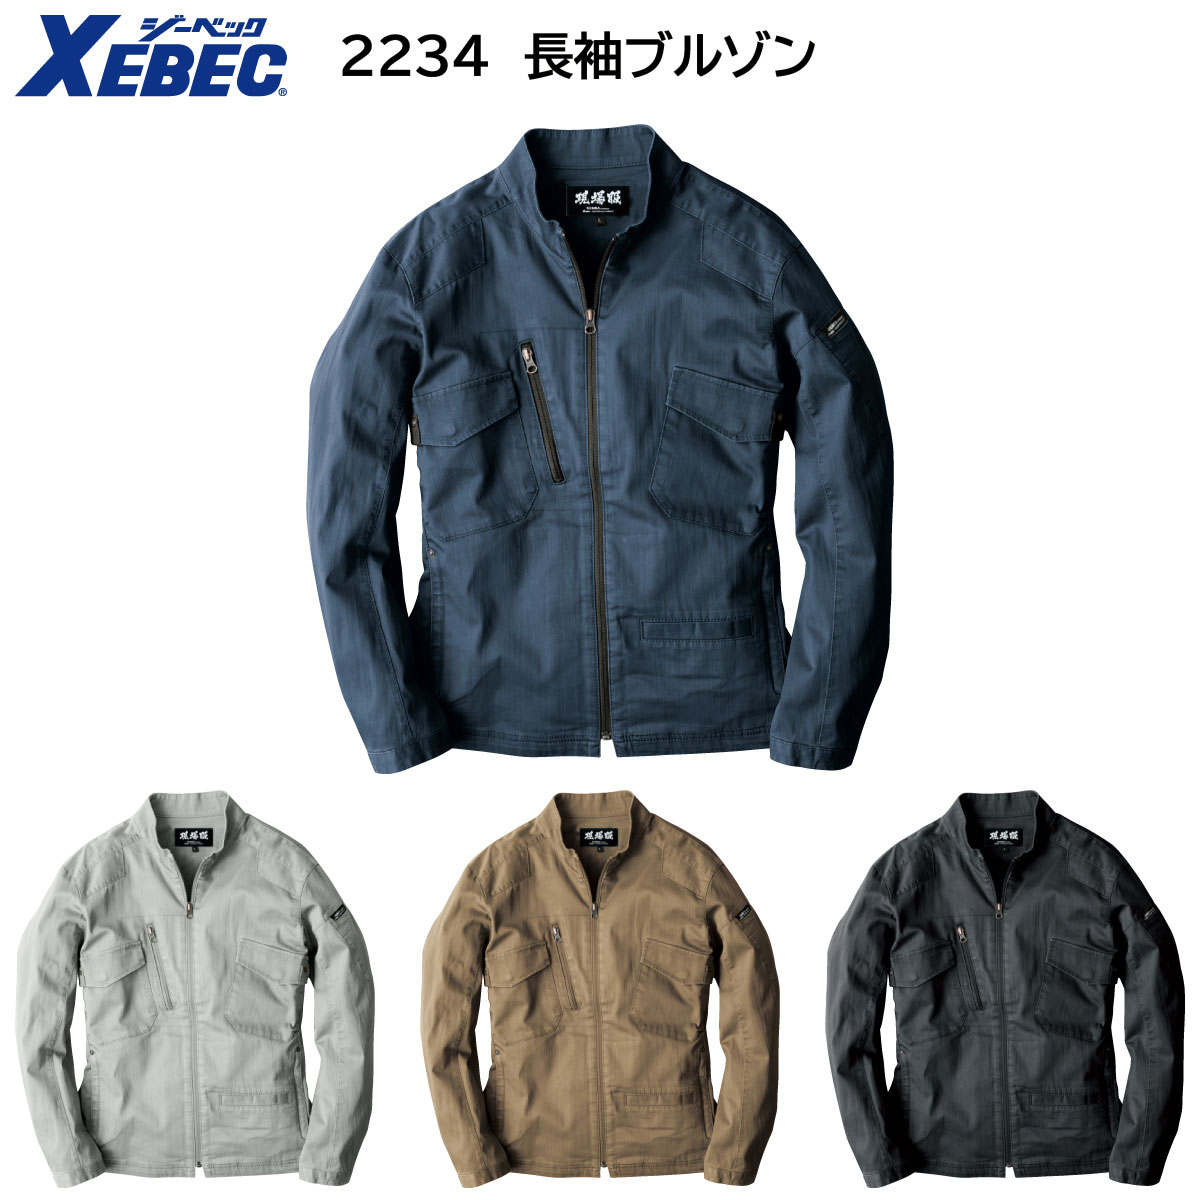 長袖ブルゾン 2234 S〜5L 春夏用 ジーベック XEBEC 4色展開